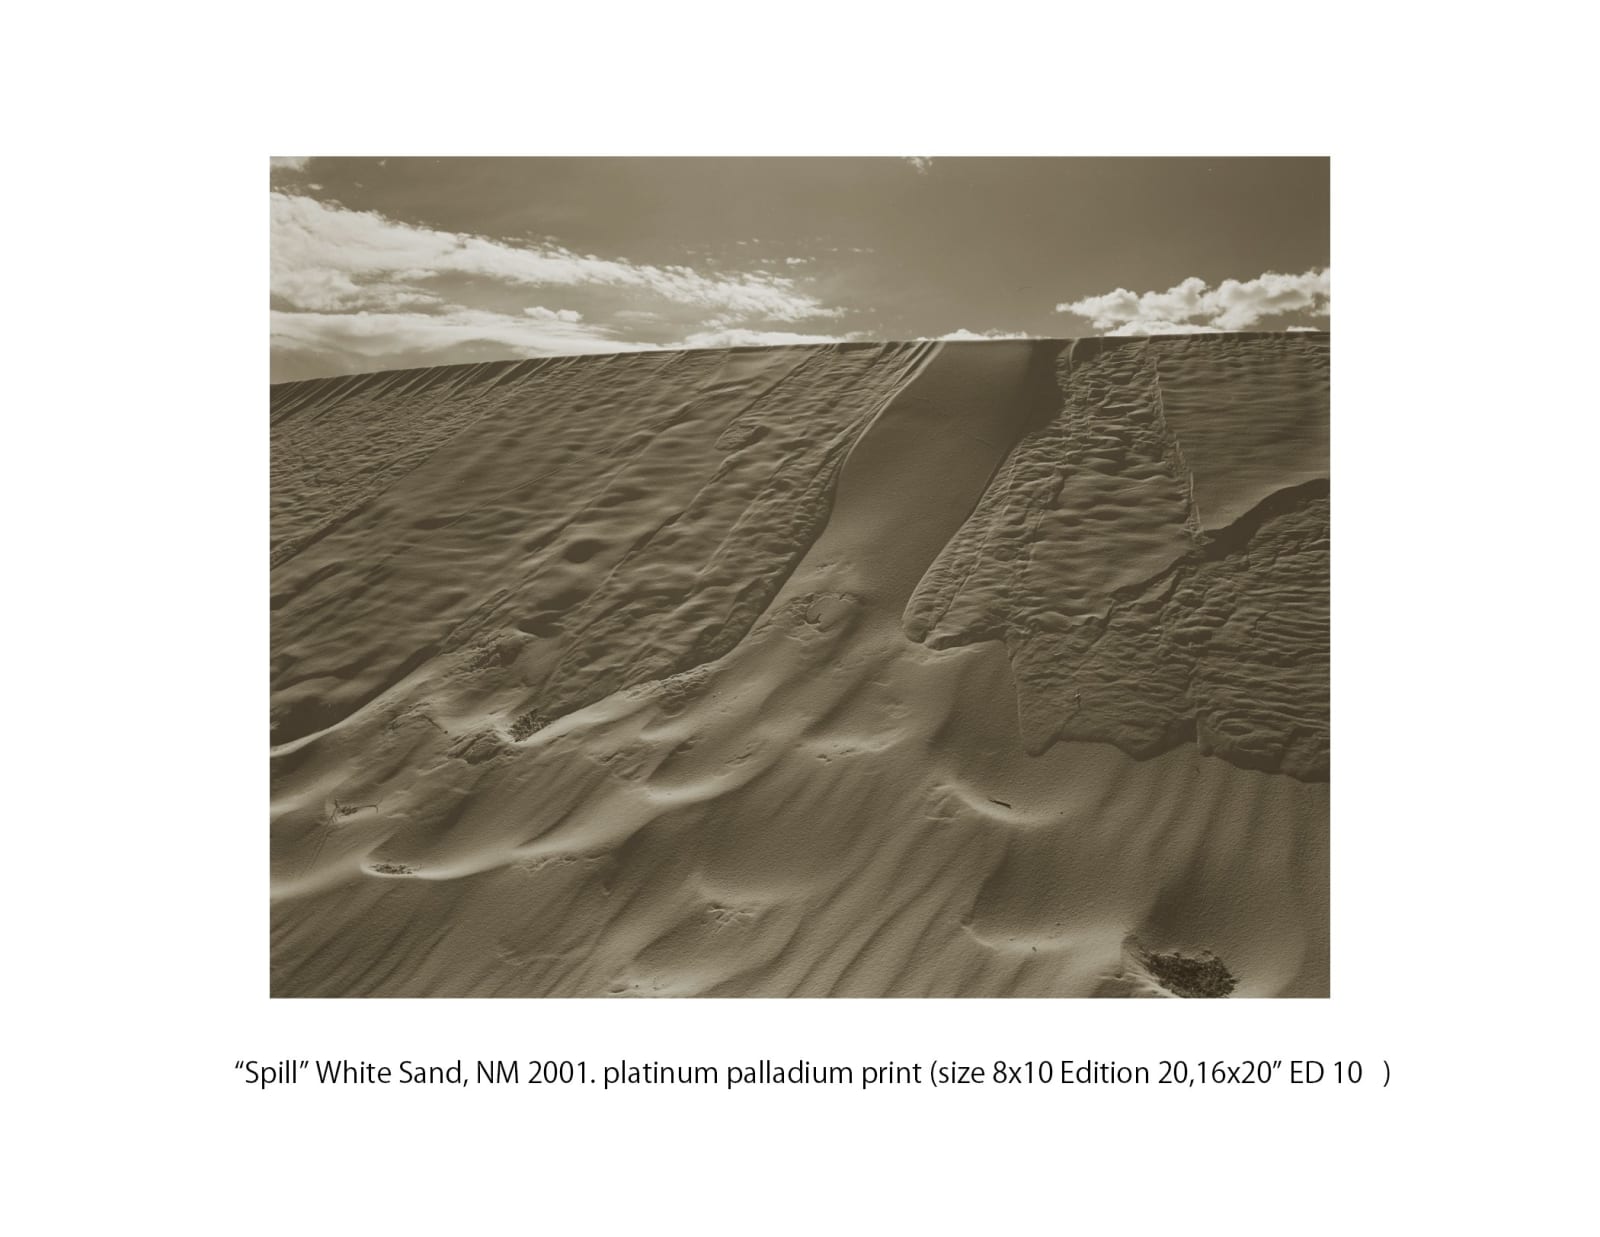 Koichiro Kurita, Spill, White Sands, New Mexico, 2001